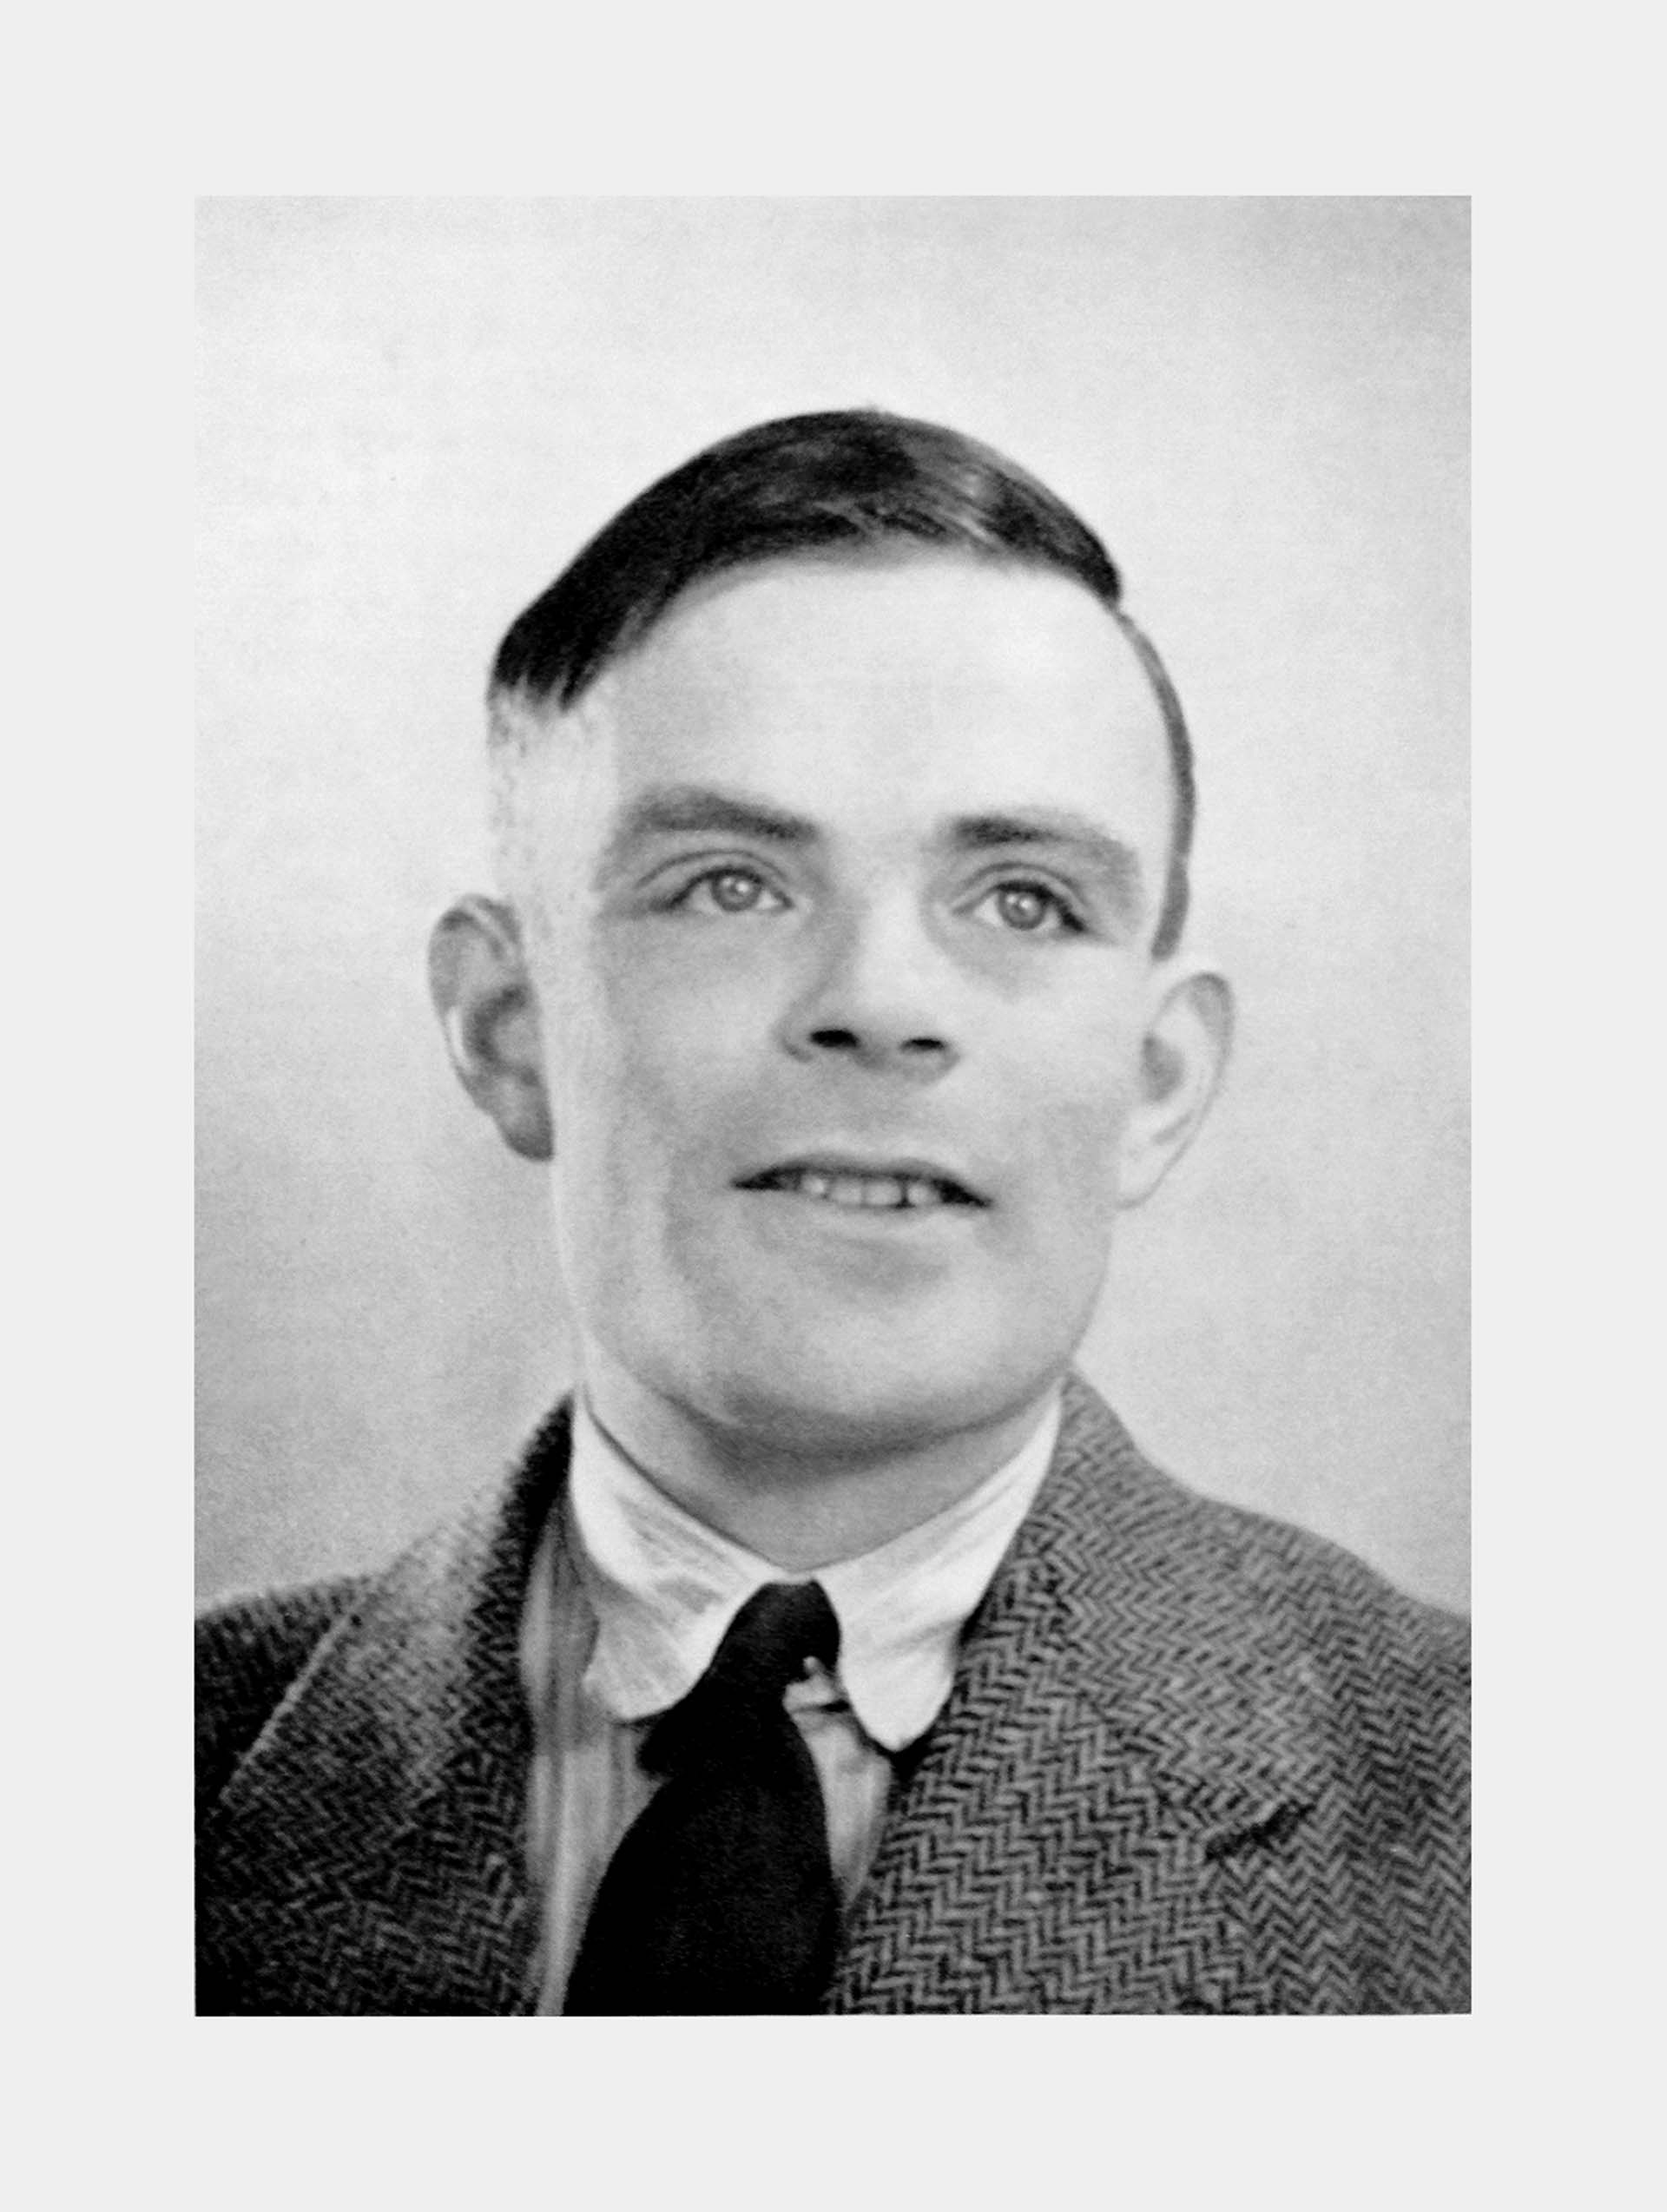 Hoy se cumplen 110 años del nacimiento de Alan Turing. En la imagen tenía 25 años, tiempos en que escribía su tesis doctoral en Princeton